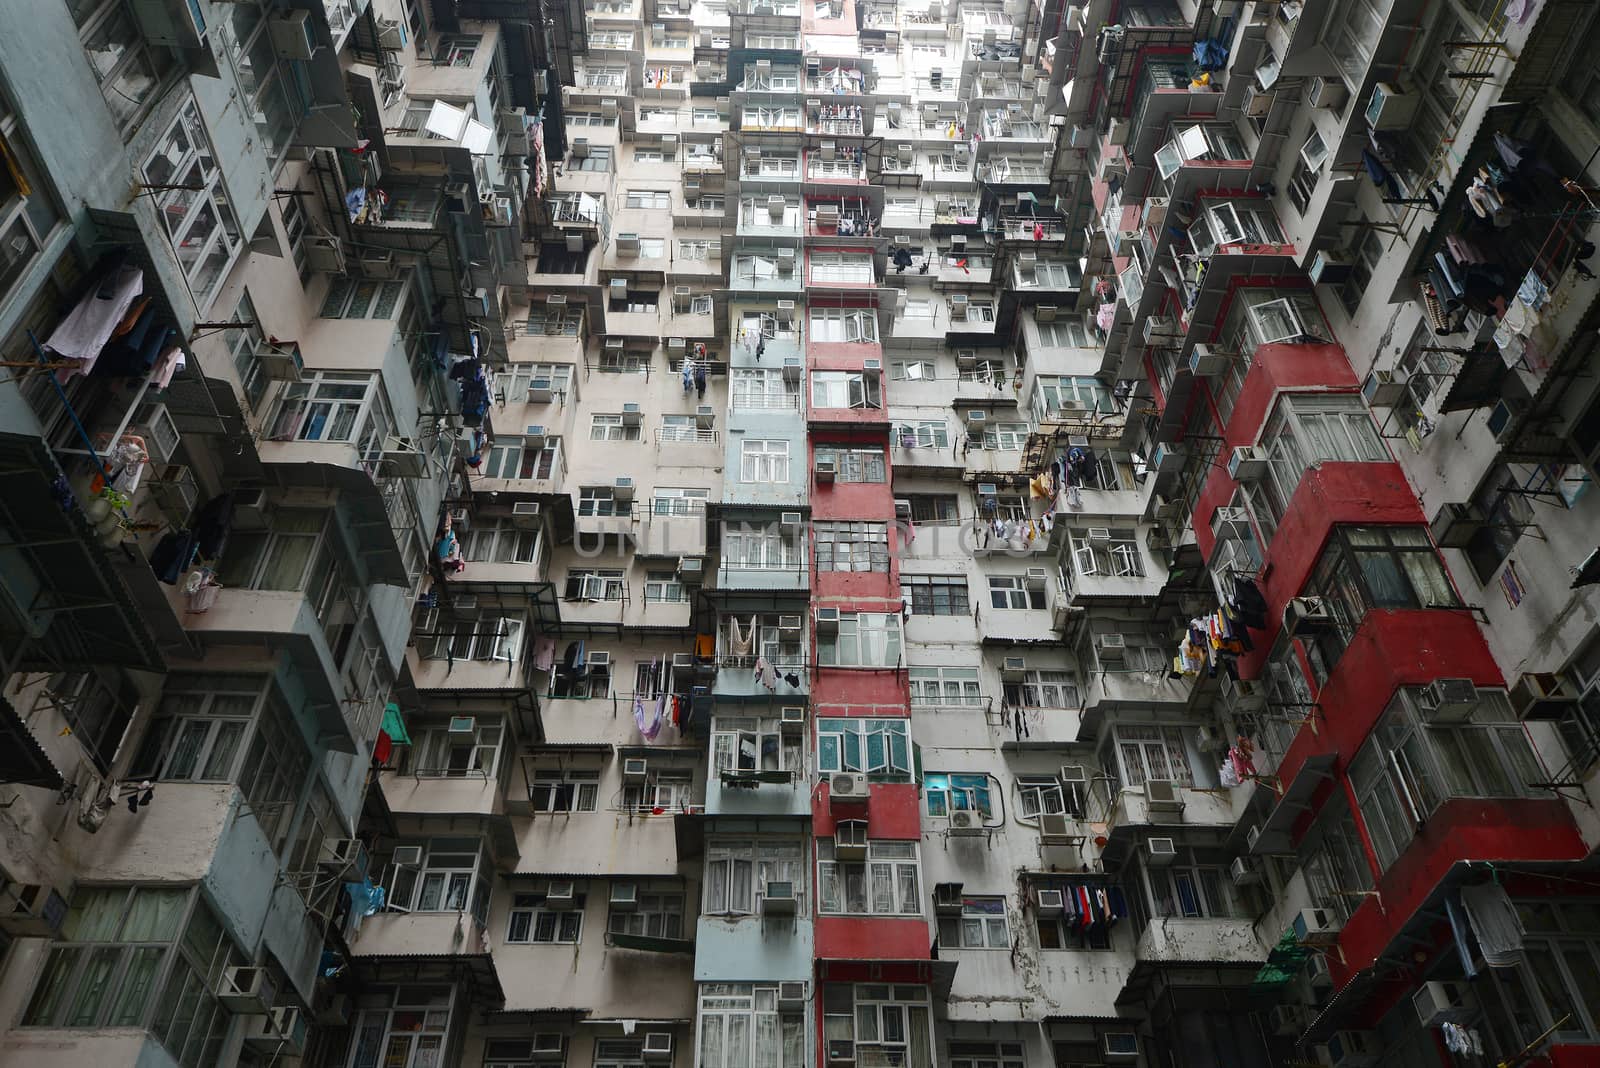 tall and dense apartment tower in Hong Kong